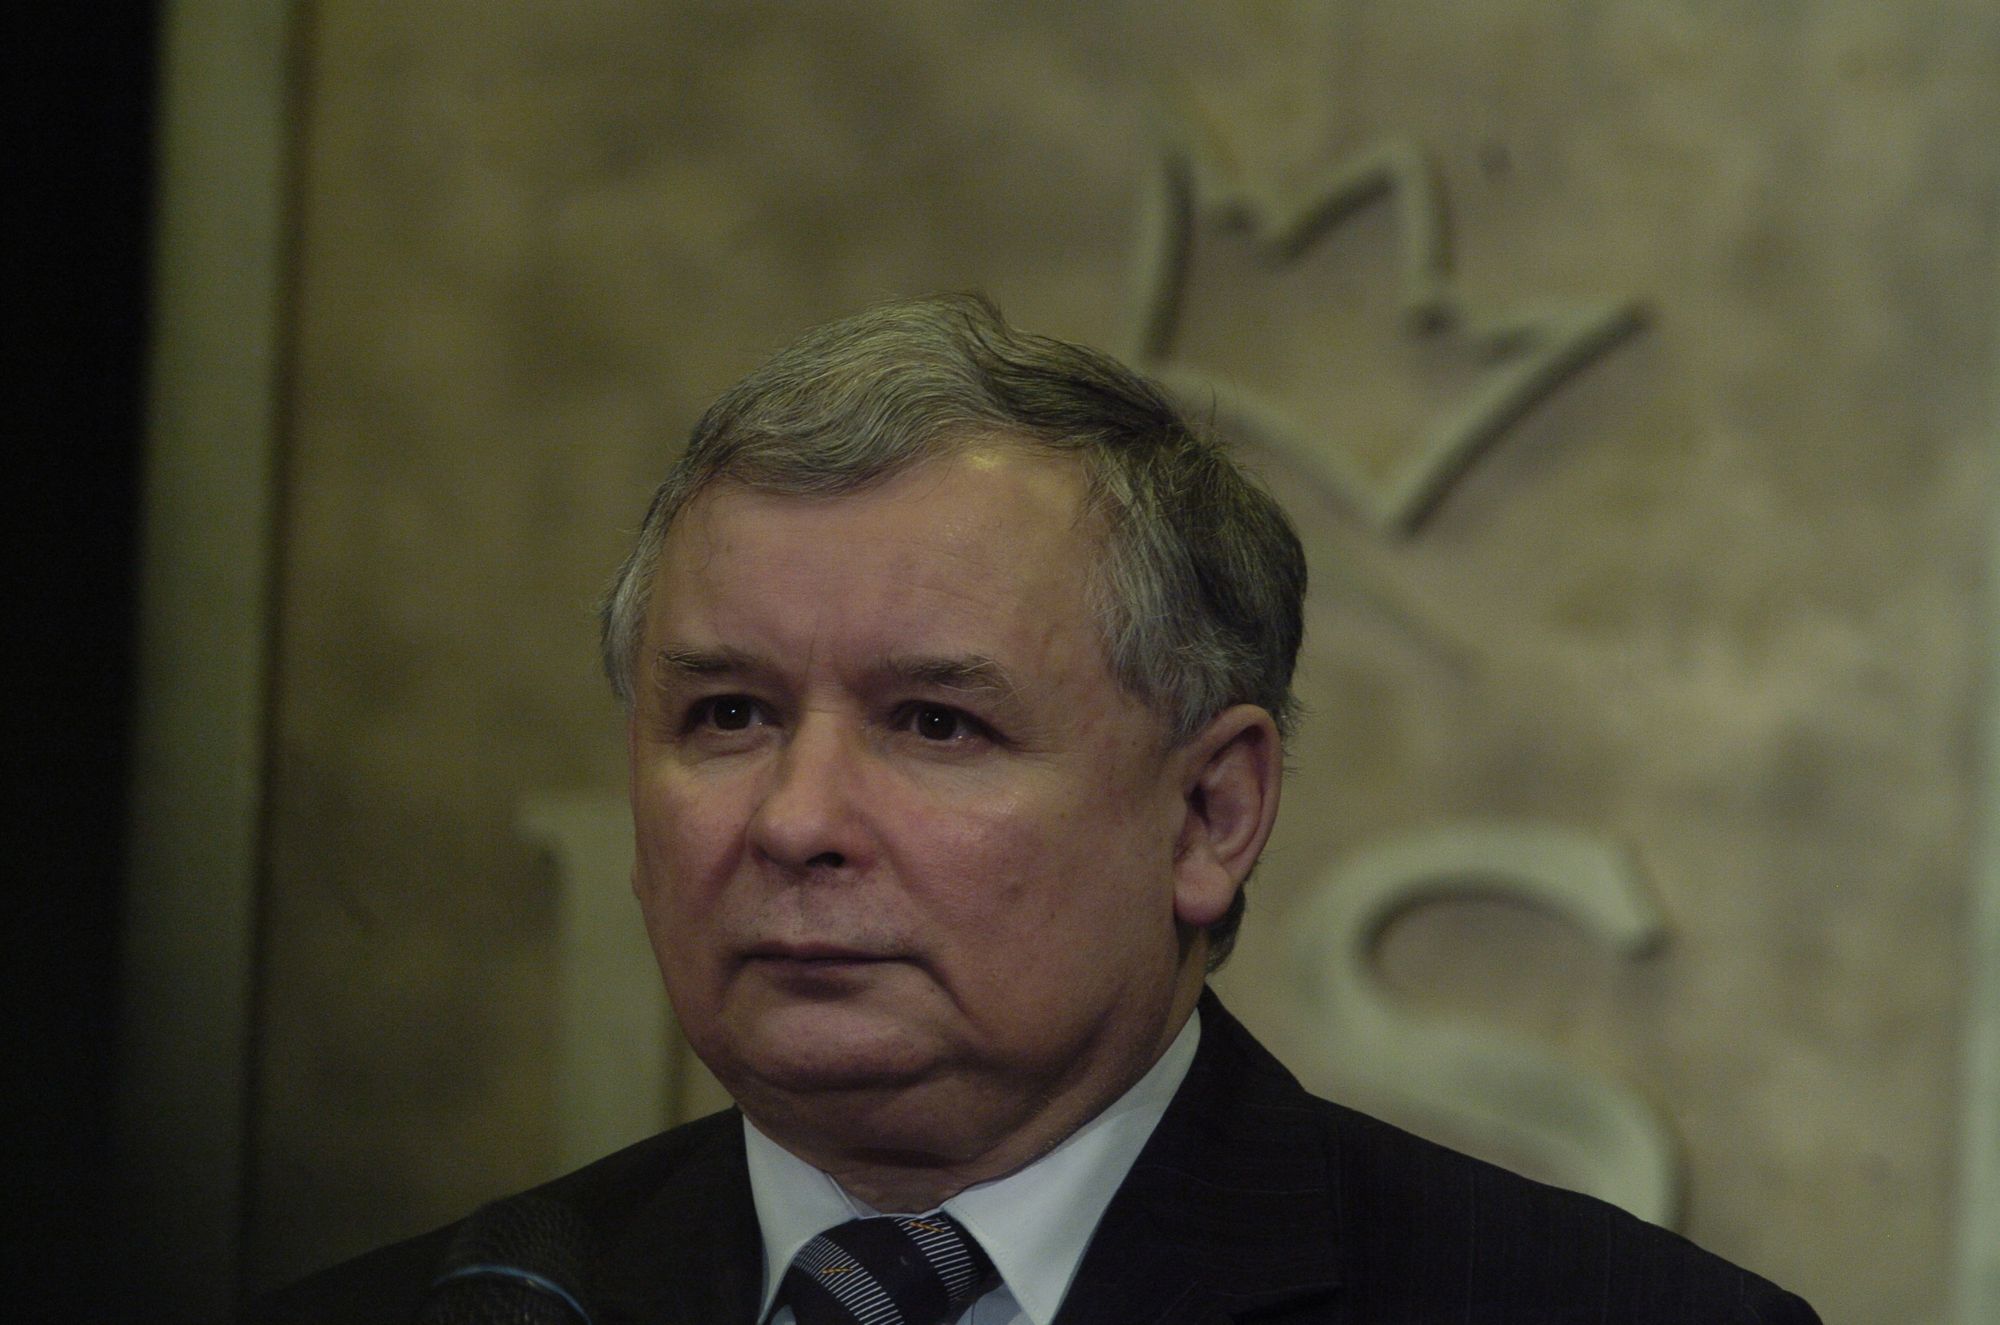                     Kaczyński depcze grób brata i wspiera Putina
                              